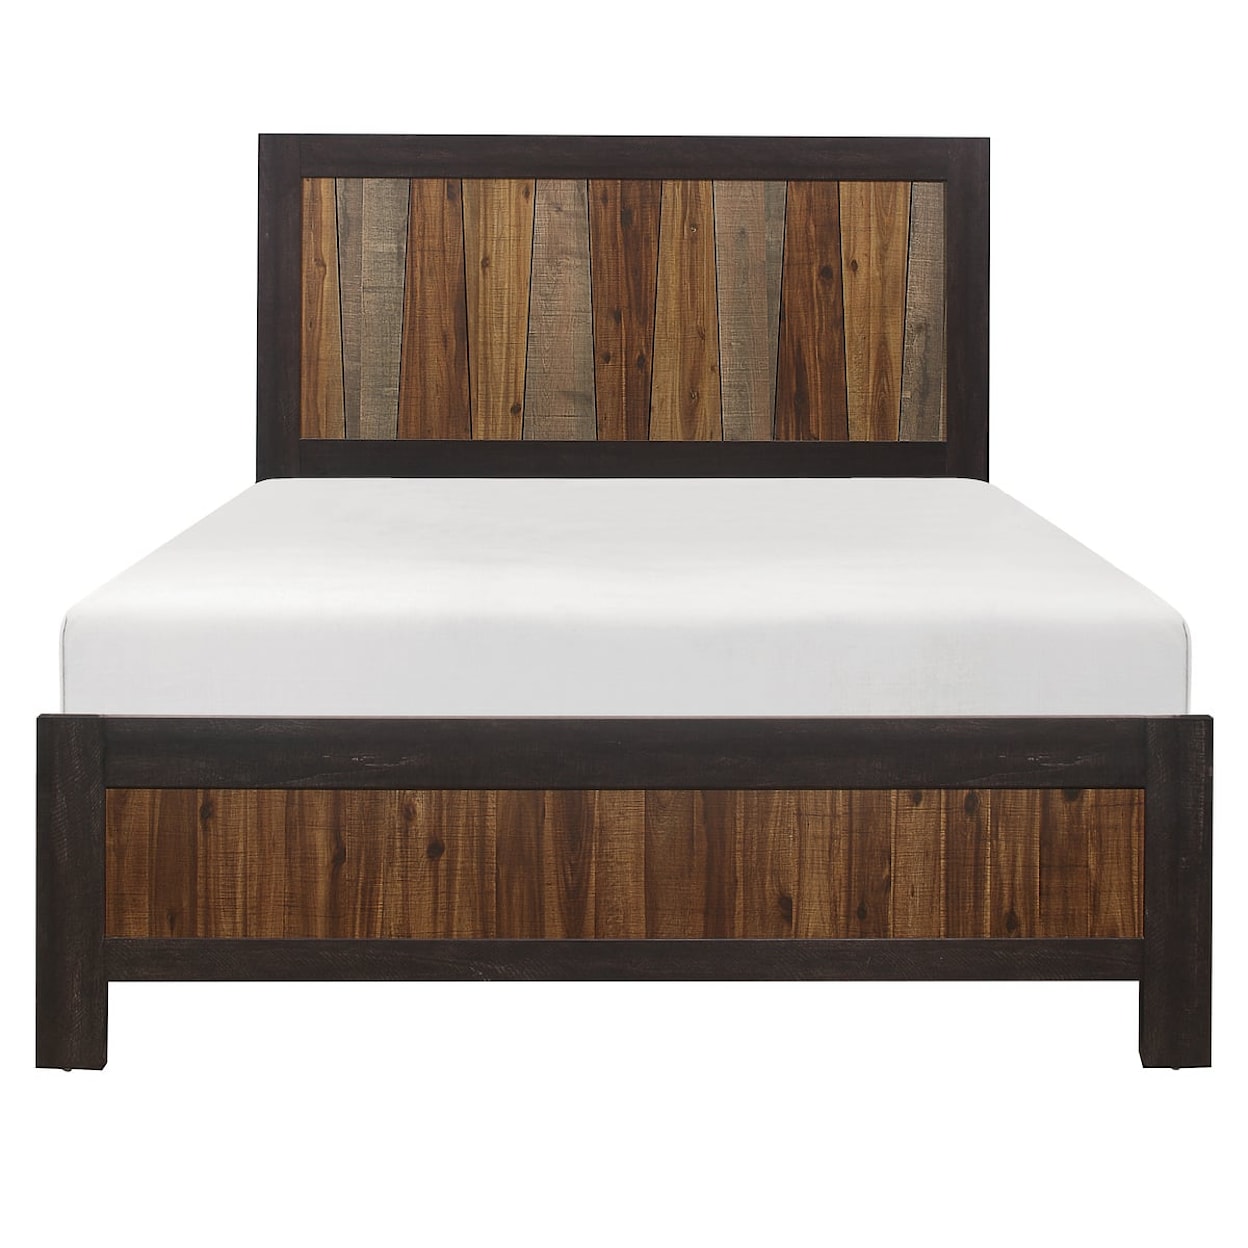 Homelegance Furniture Cooper Queen Panel Bed